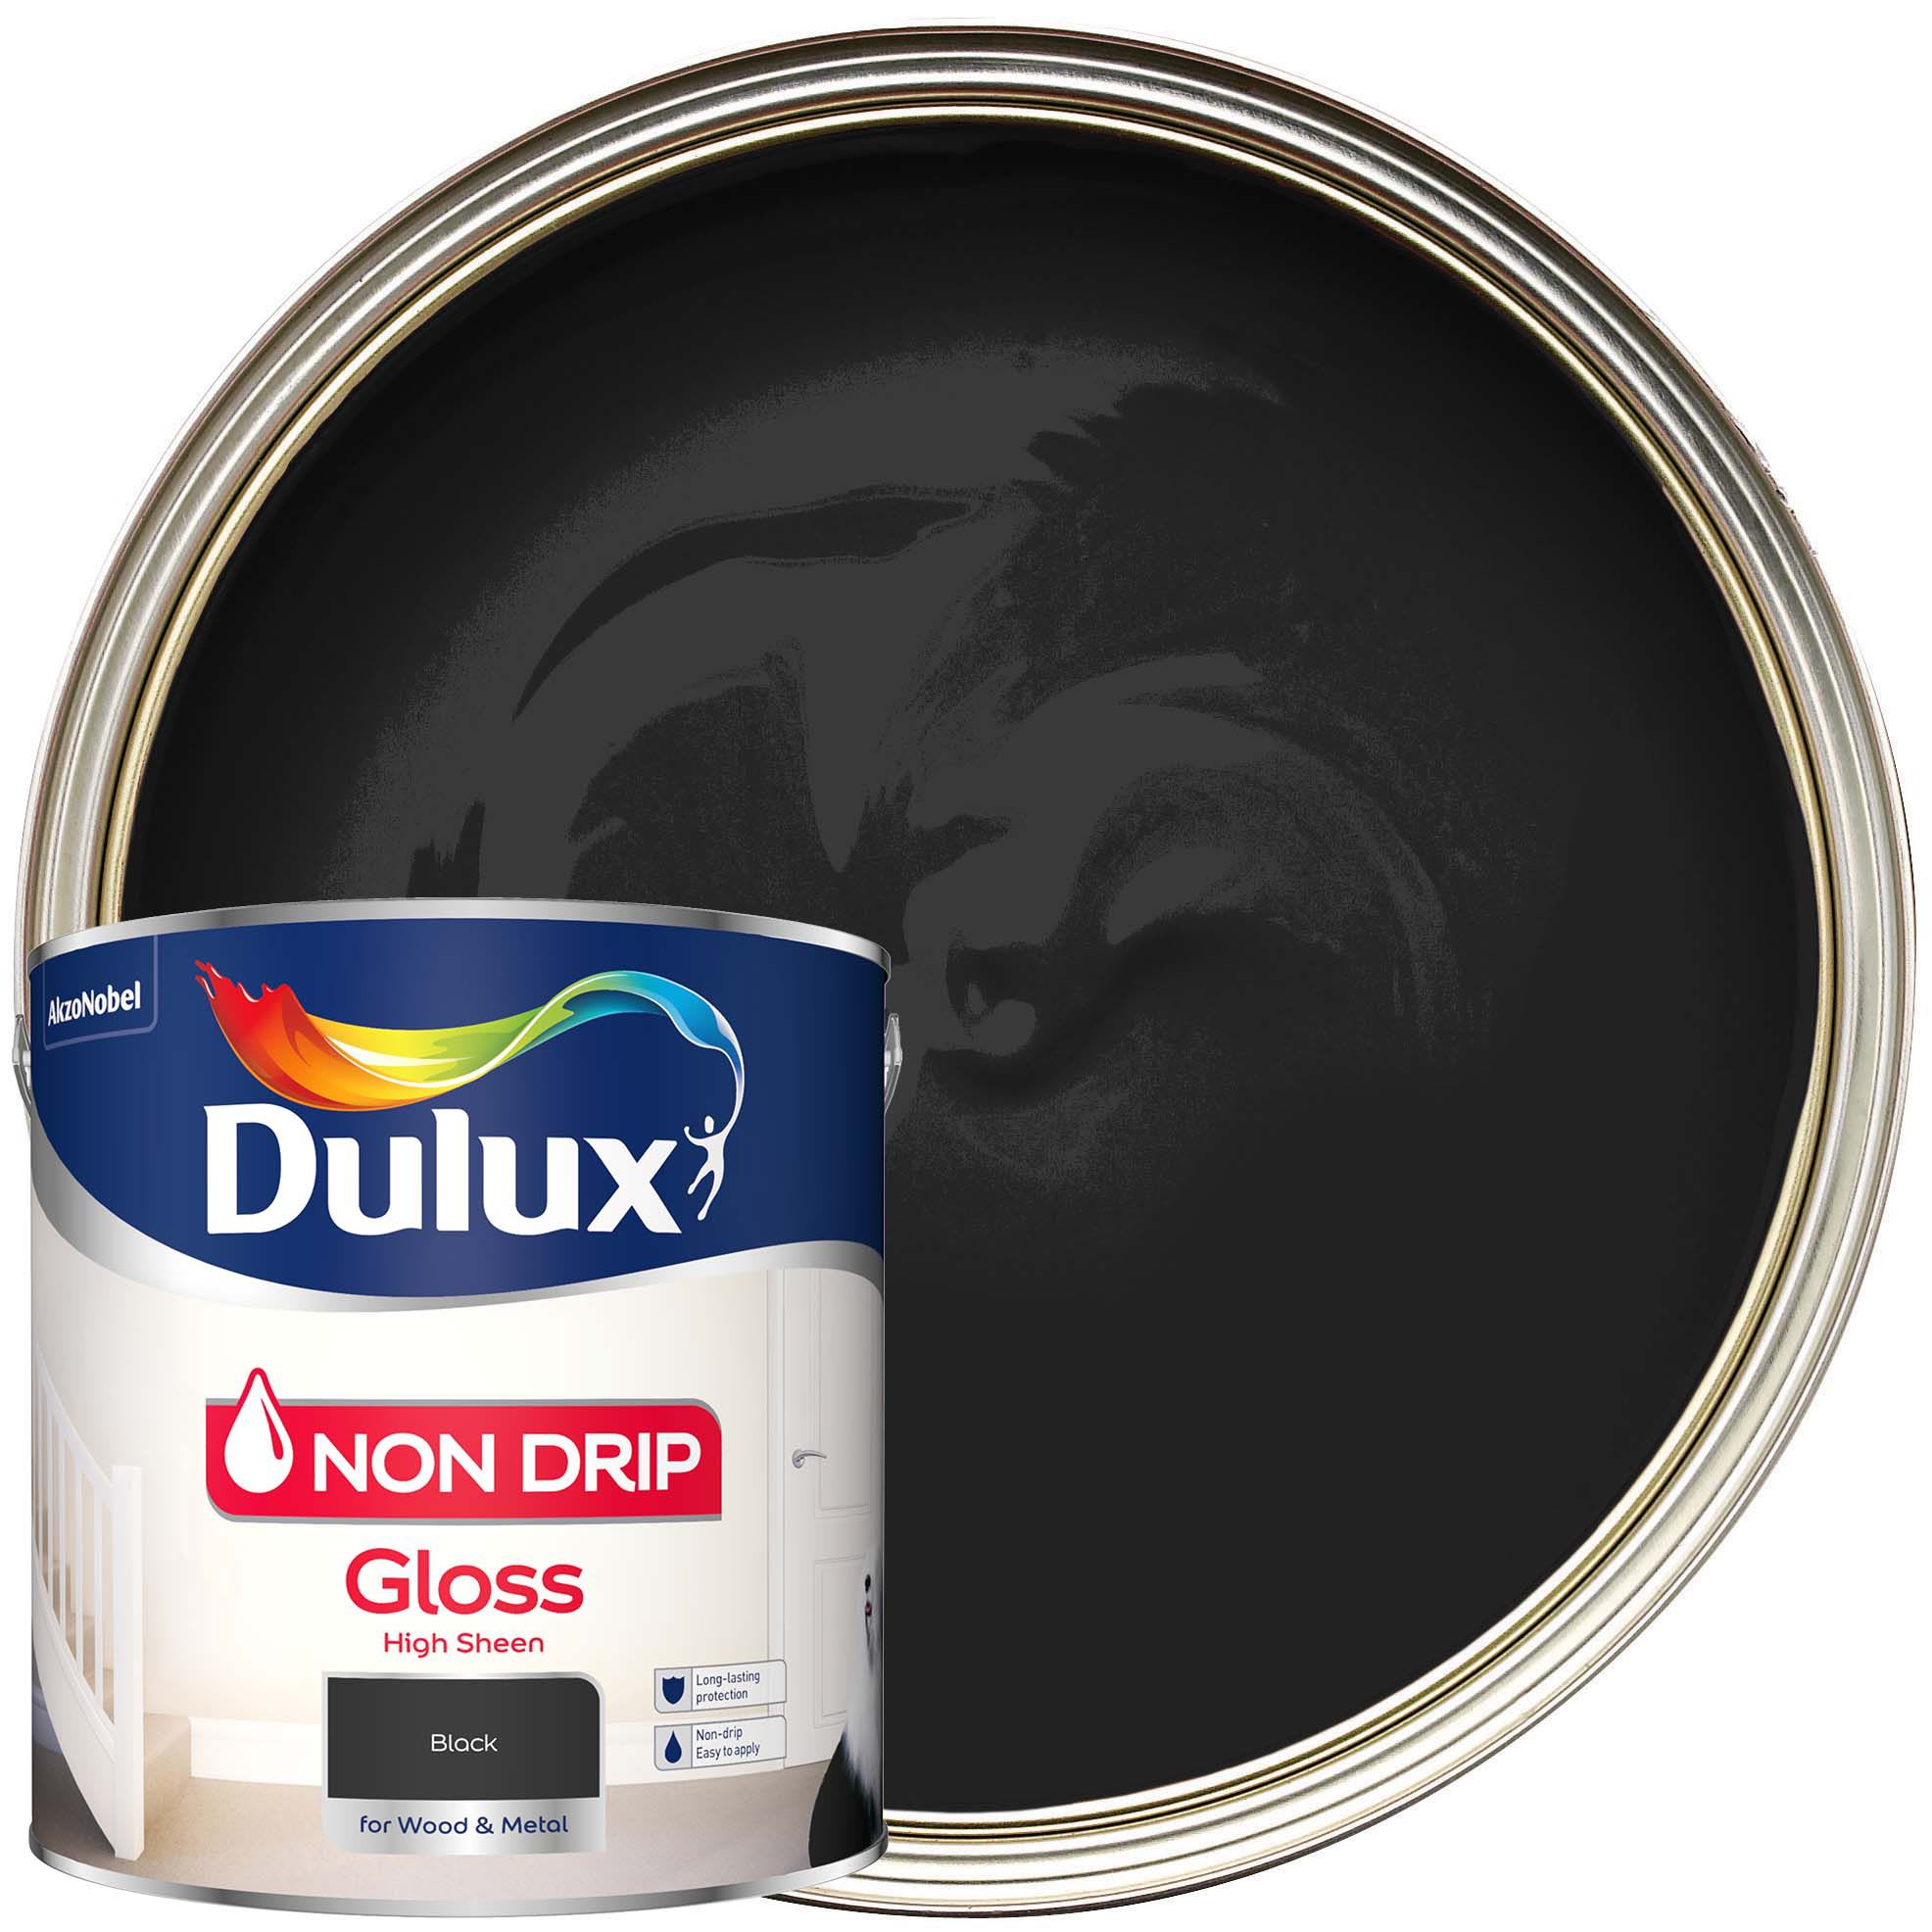 Dulux Non Drip Gloss Black 2.5L | Wickes.co.uk